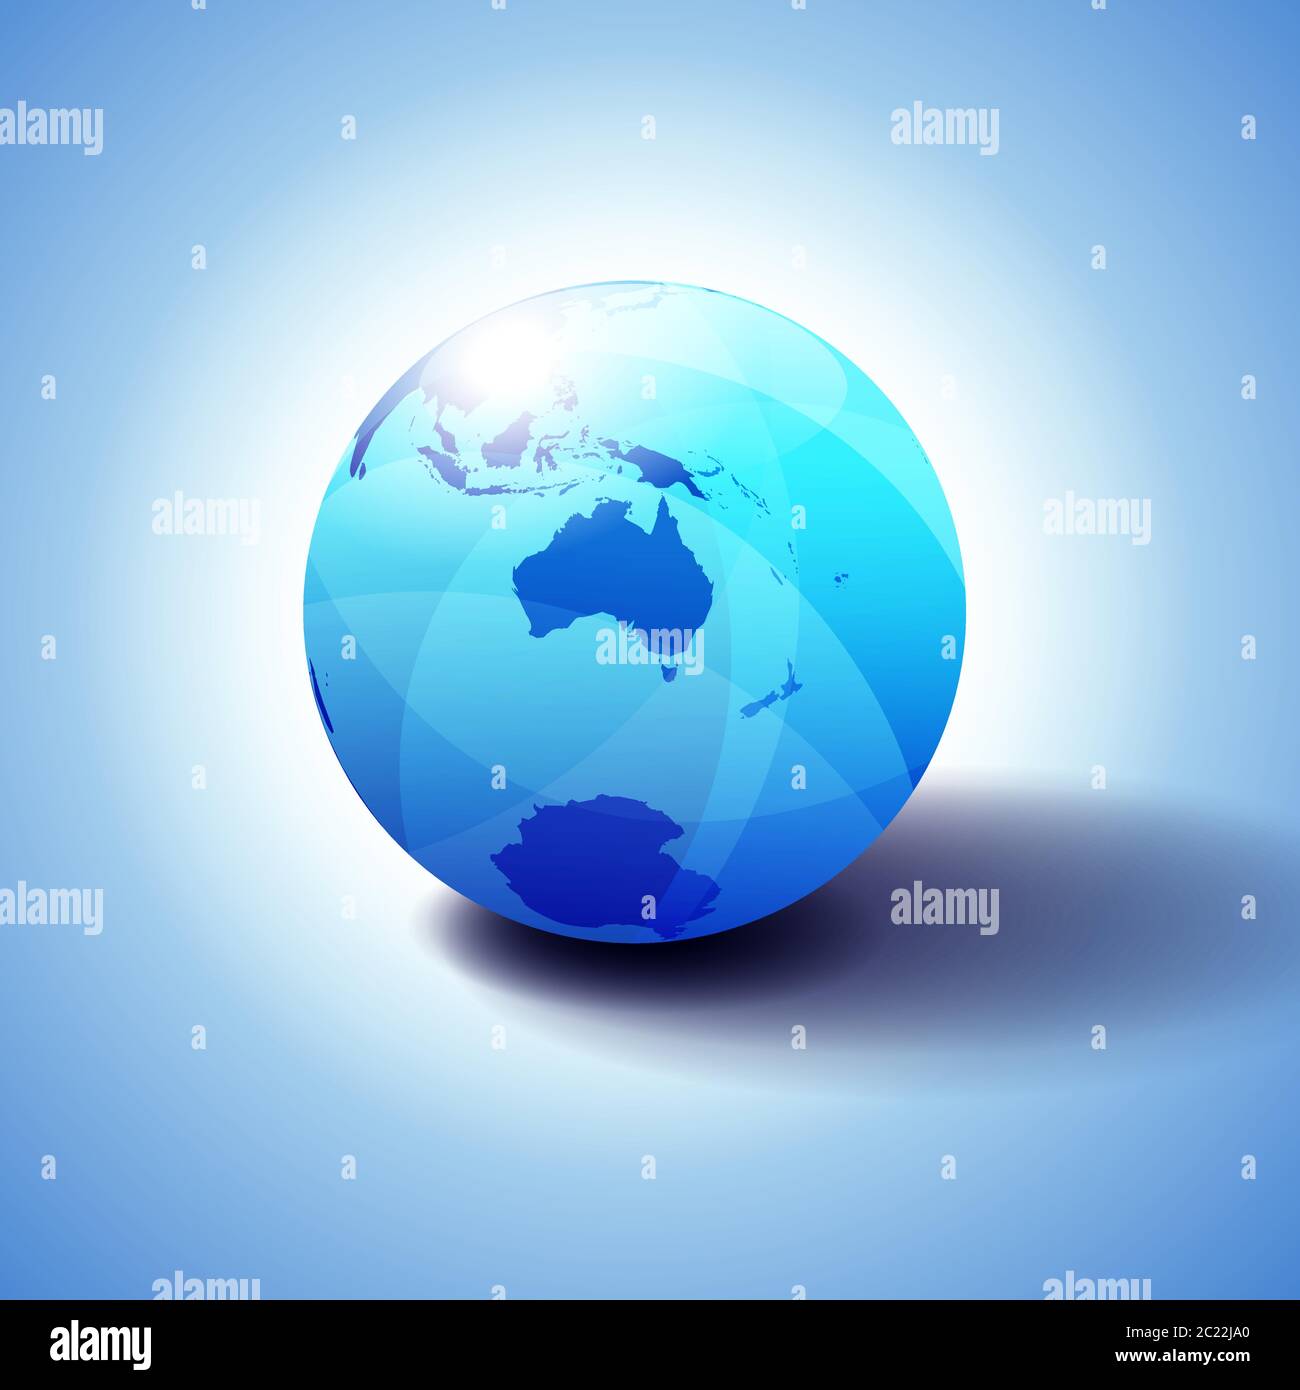 Australia e Nuova Zelanda, Polo Sud, Antartide, sfondo con icona Globe illustrazione 3D, lucida, sfera lucida con mappa globale in blu sottile Illustrazione Vettoriale